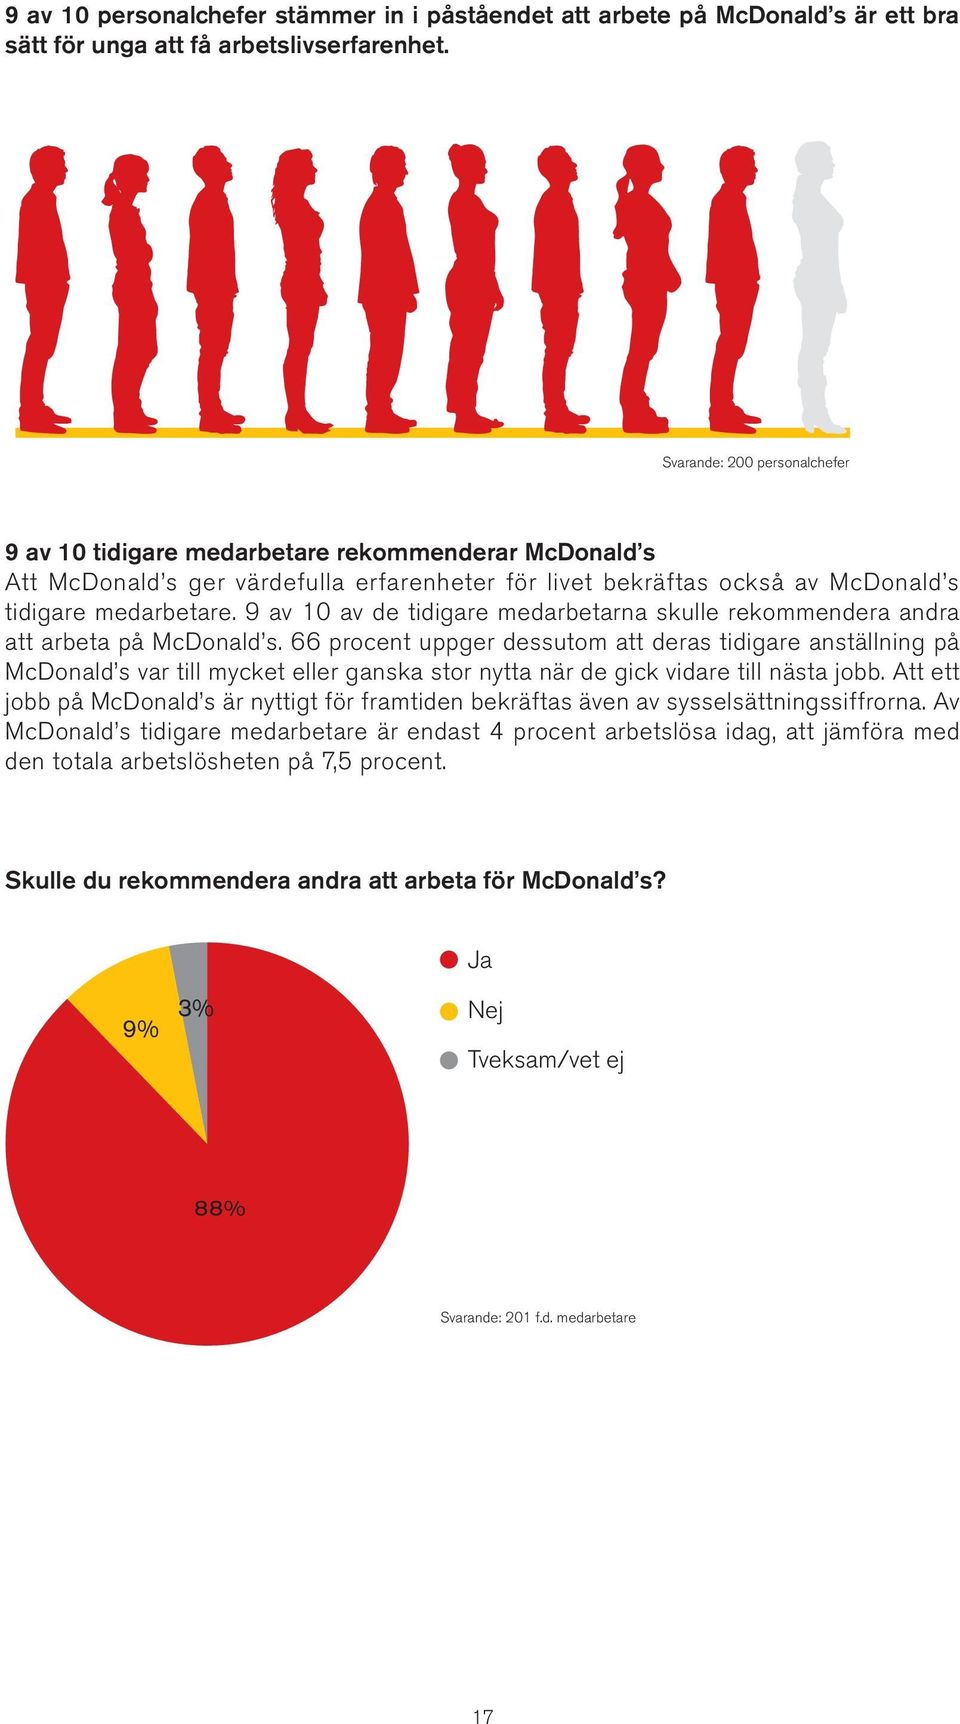 9 av 10 av de tidigare medarbetarna skulle rekommendera andra att arbeta på McDonald s.